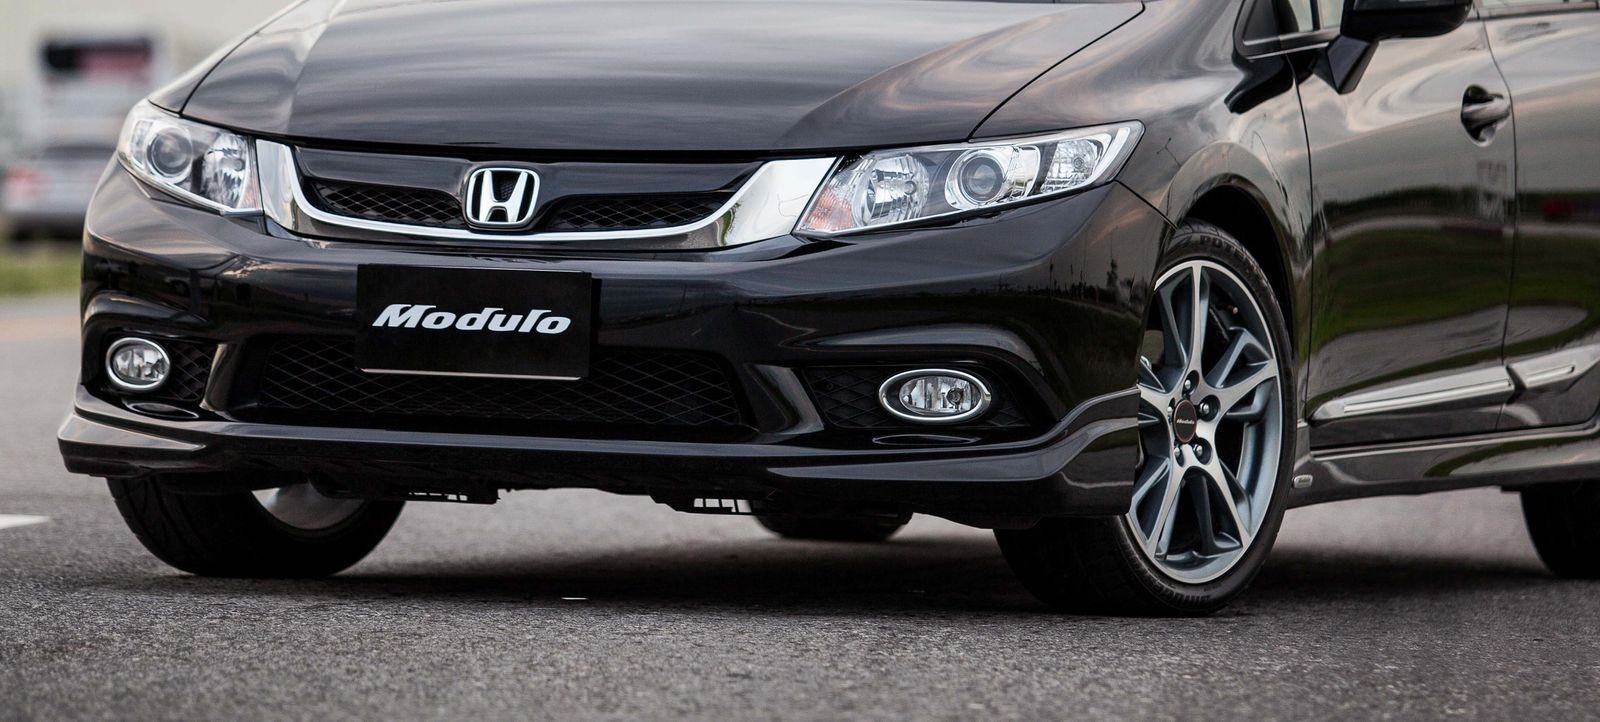 5 причин покупать и не покупать Honda Civic IX